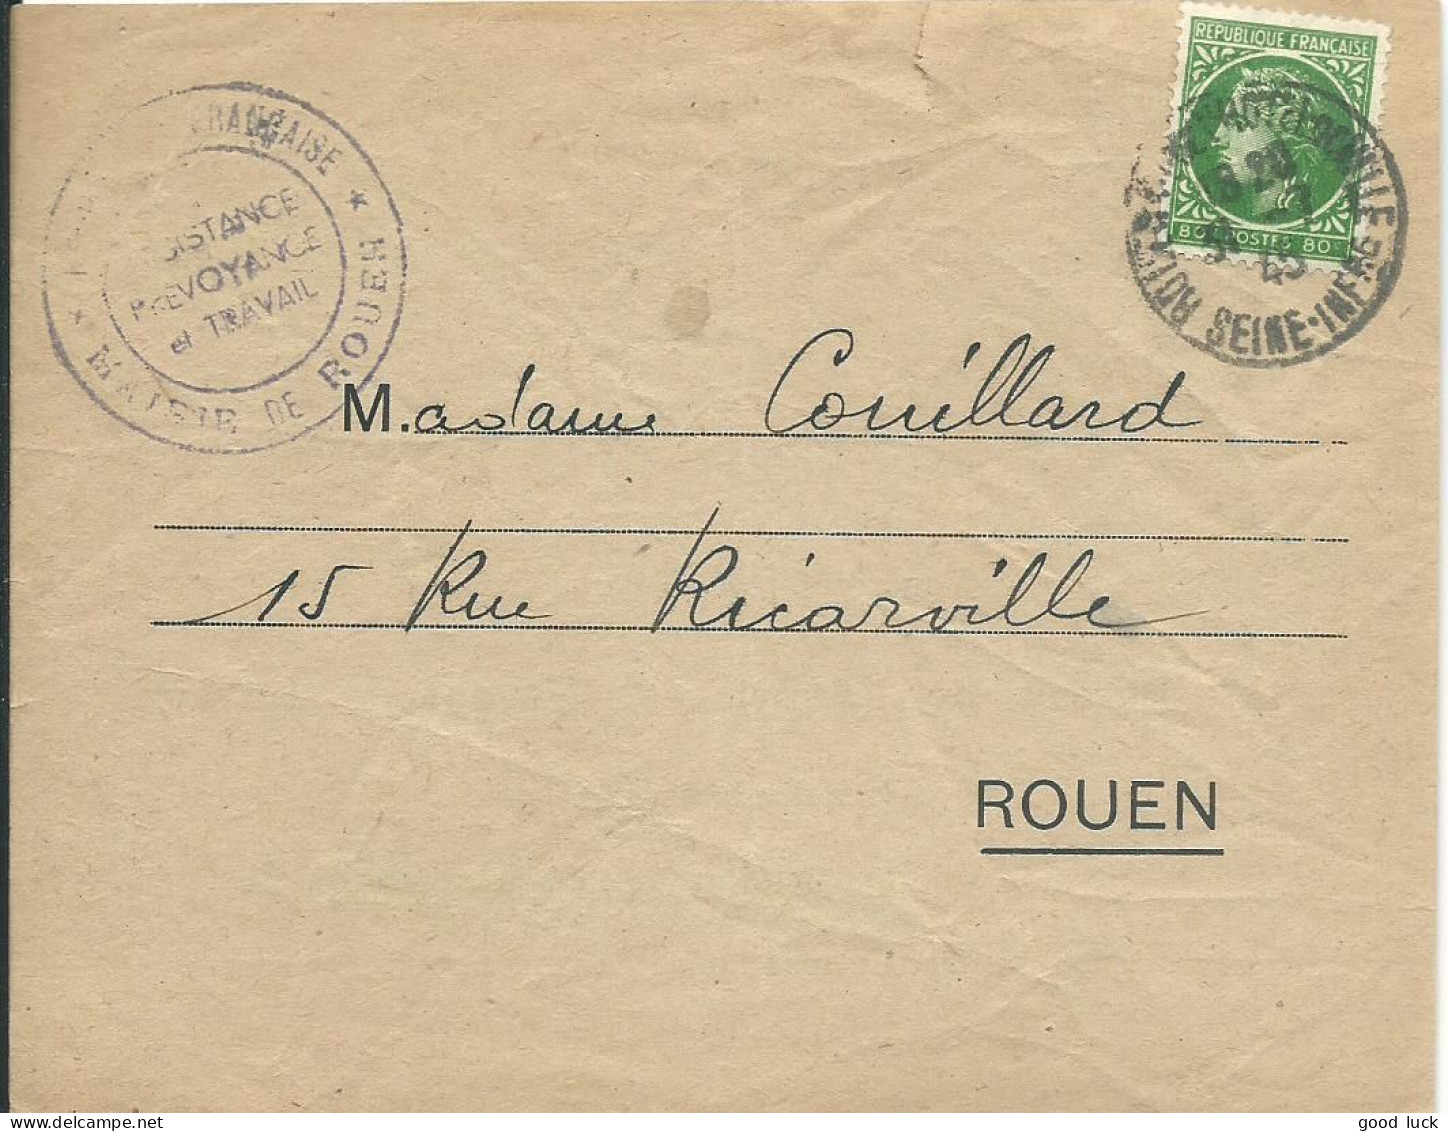 FRANCE LETTRE 80c MAIRIE DE ROUEN POUR ROUEN ( SEINE INFERIEURE ) DE 1945 LETTRE COVER - 1945-47 Cérès De Mazelin